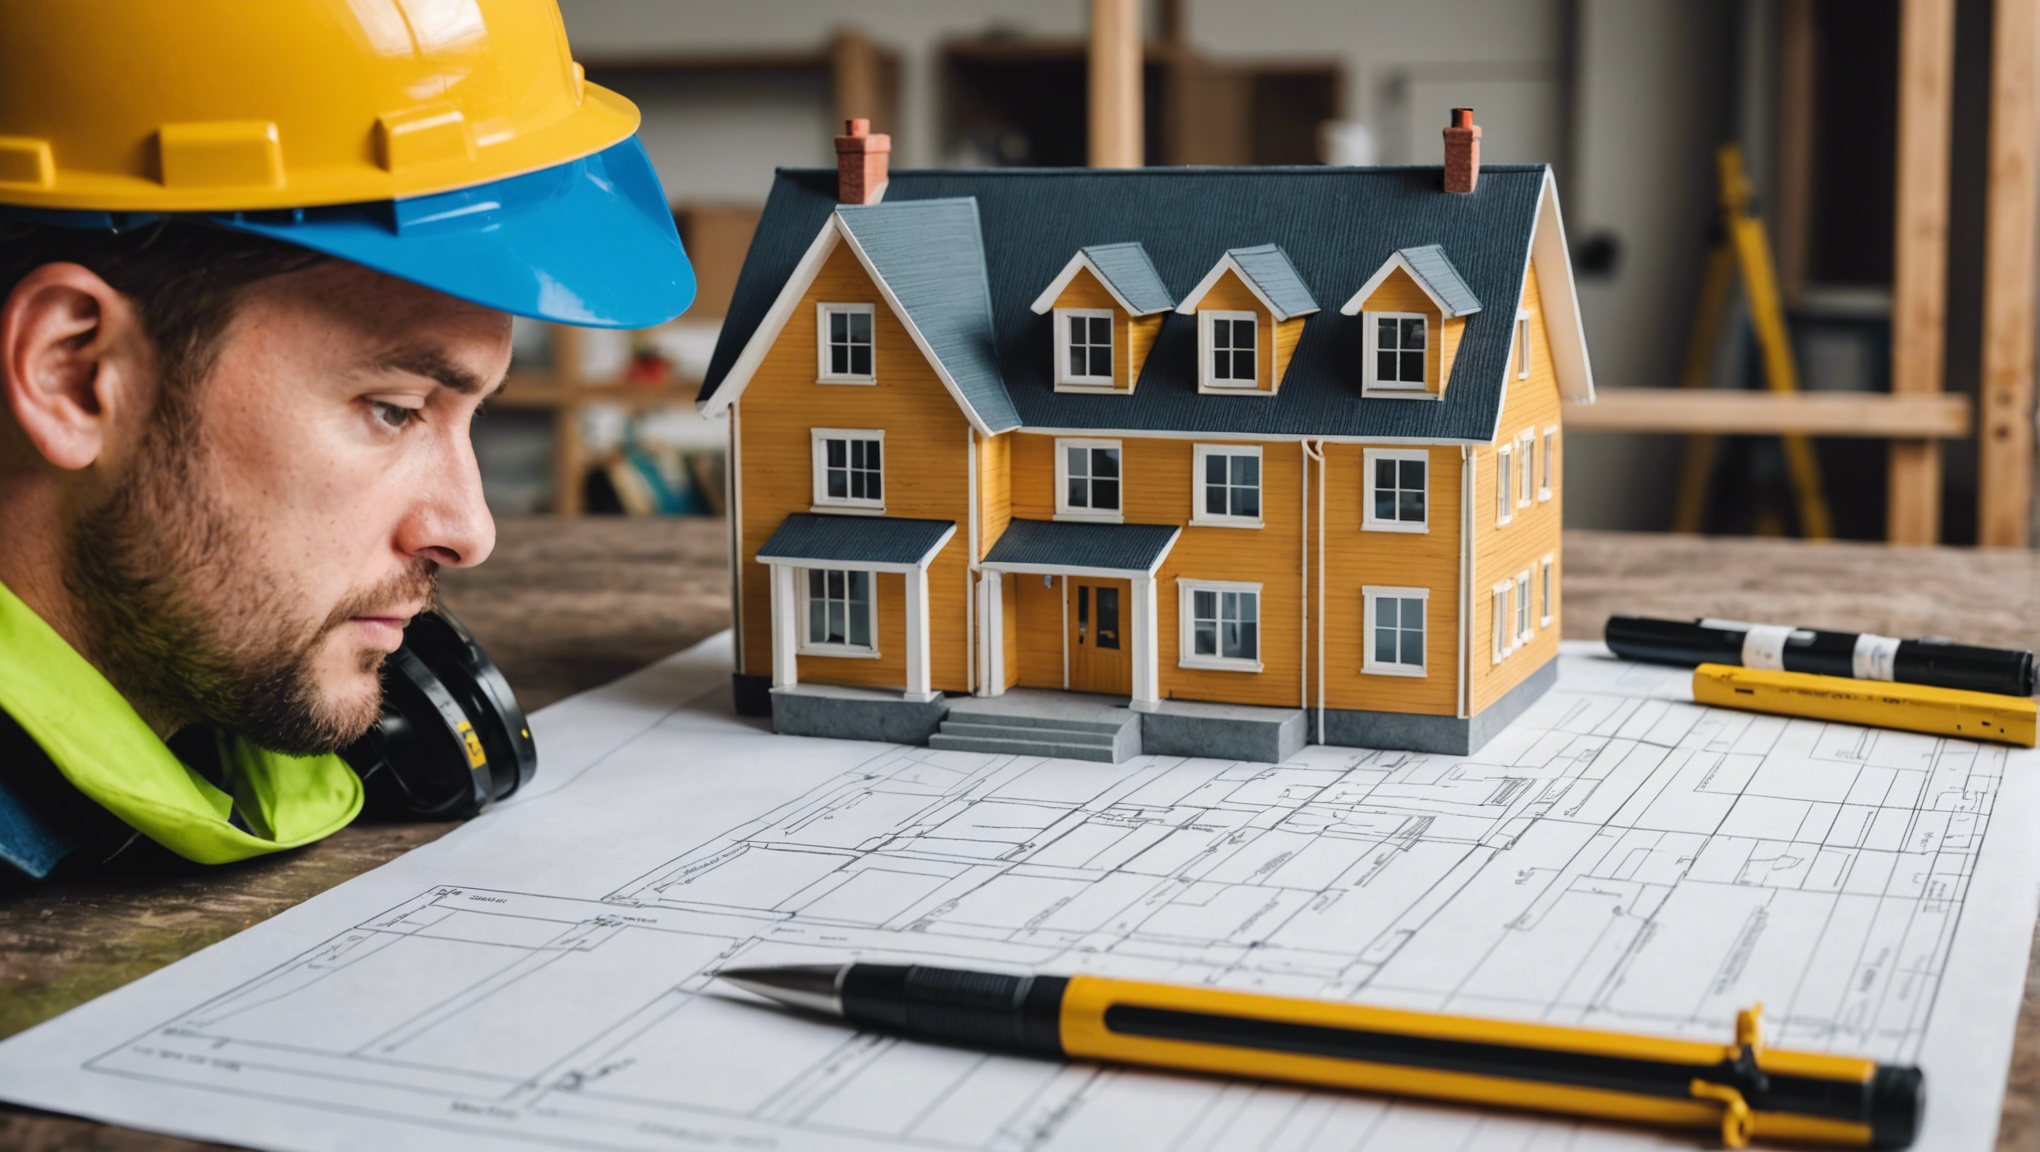 découvrez comment estimer le coût de construction au mètre carré d'une maison et préparez-vous à budgétiser efficacement votre projet de construction grâce à nos astuces et conseils pratiques.